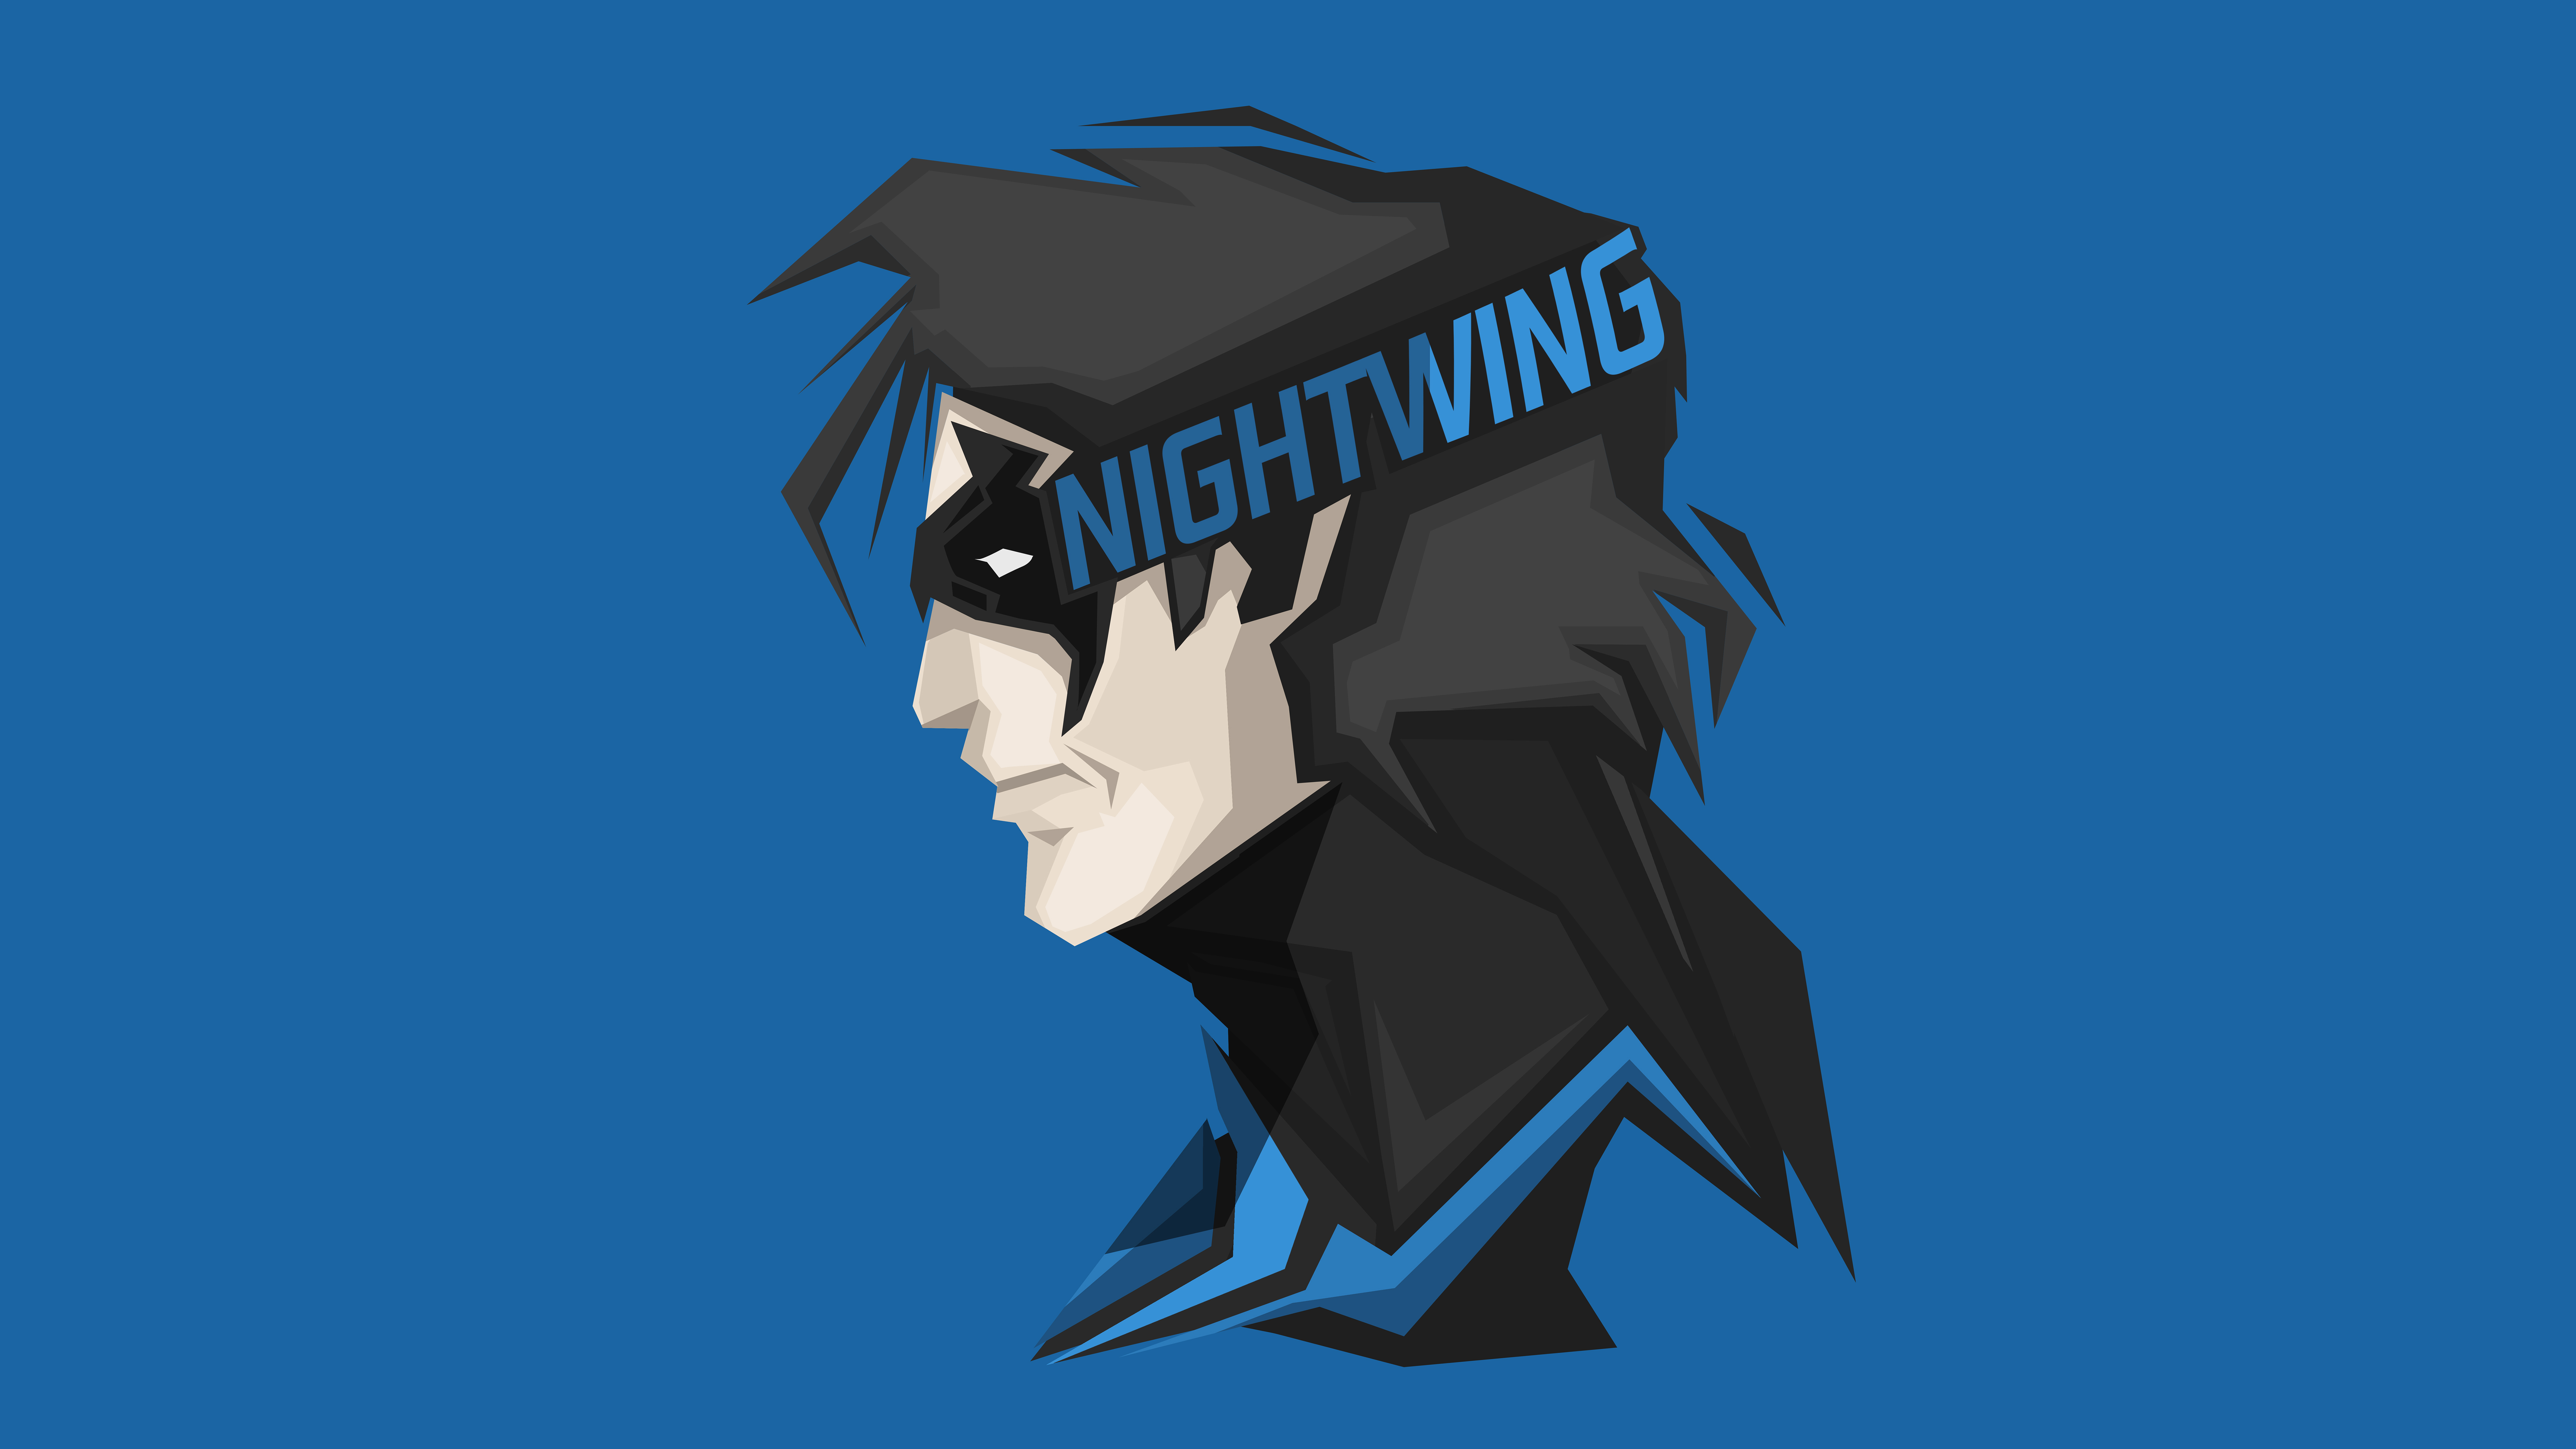 Nightwing DC Comics Superhero 4K 8k